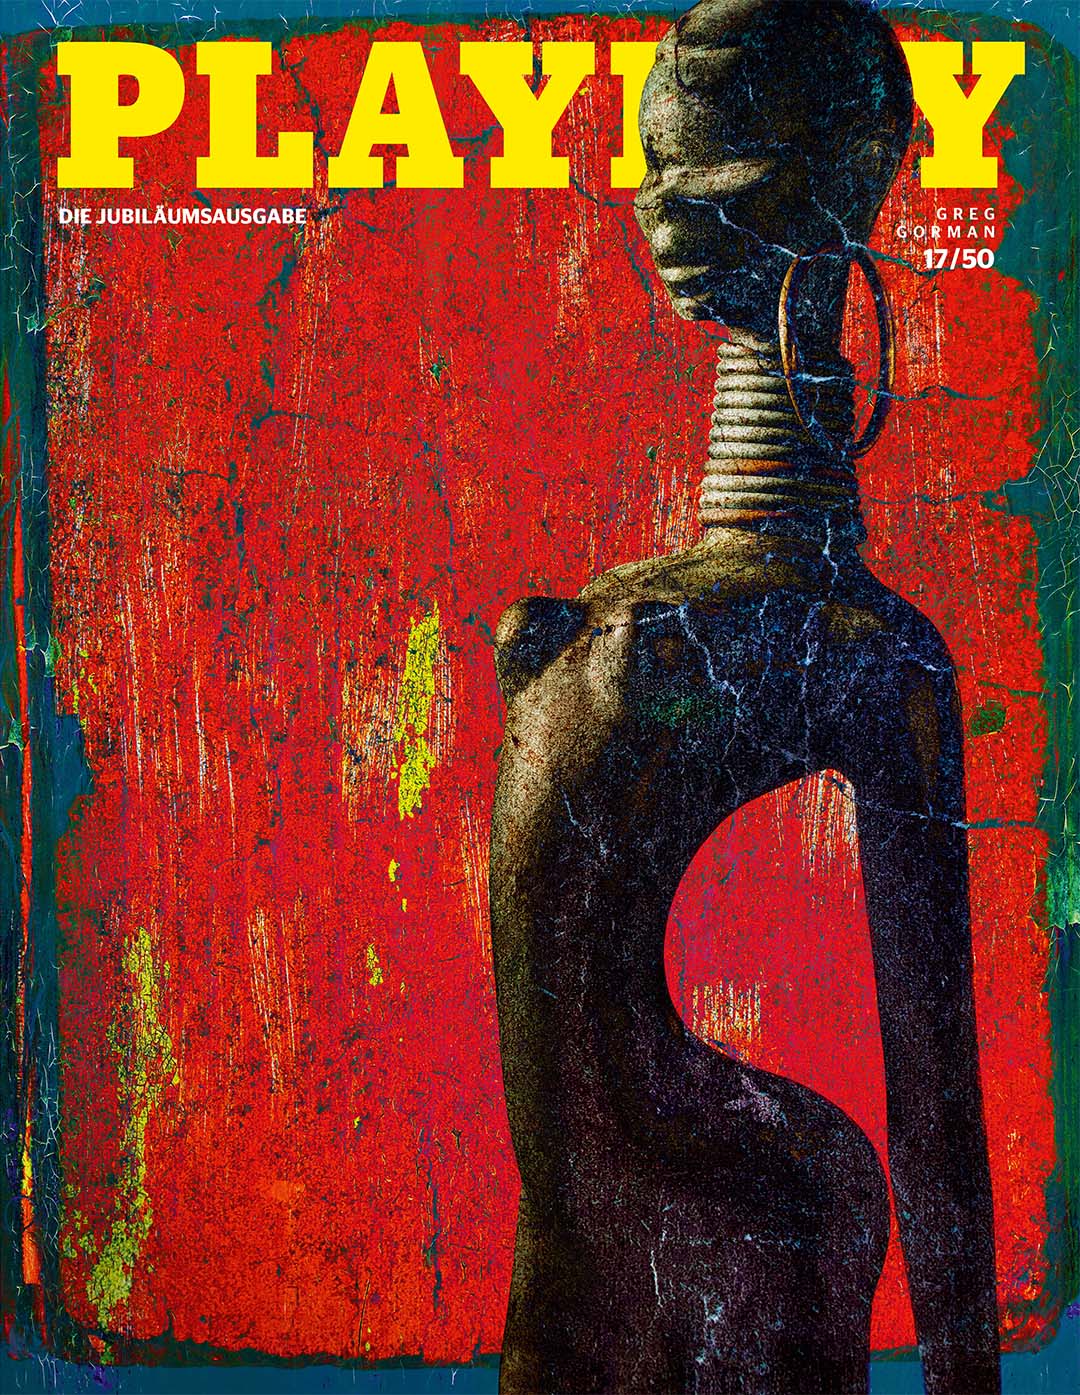 50 Jahre. 50 Cover. Das Titelbild gestaltet von Greg Gorman